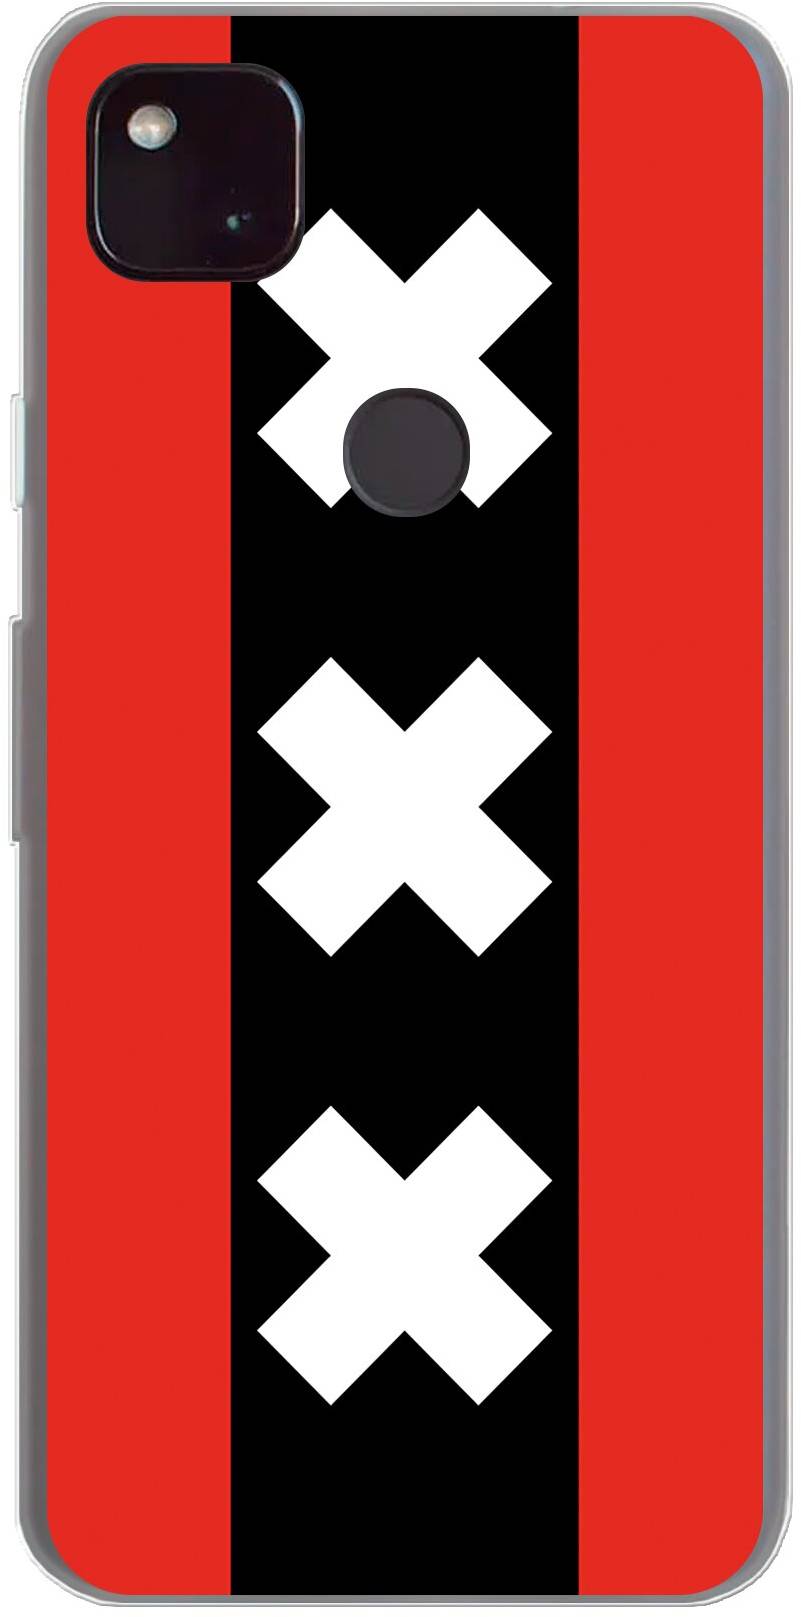 Amsterdamse vlag Pixel 4a 5G